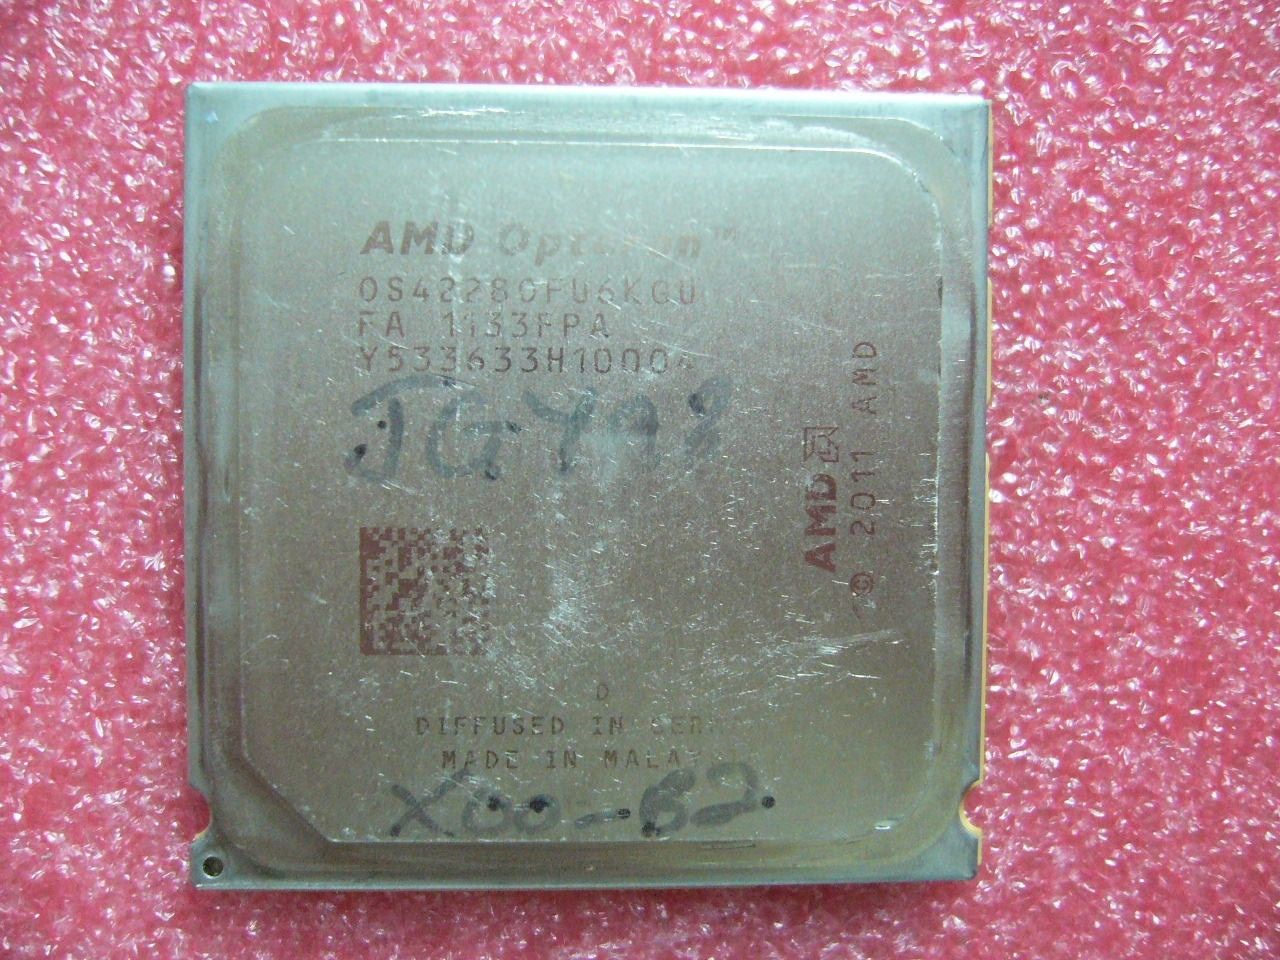 QTY 1x AMD Opteron 4228 HE 2.8 GHz Six Core (OS4228OFU6KGU) CPU Socket C32 - Click Image to Close